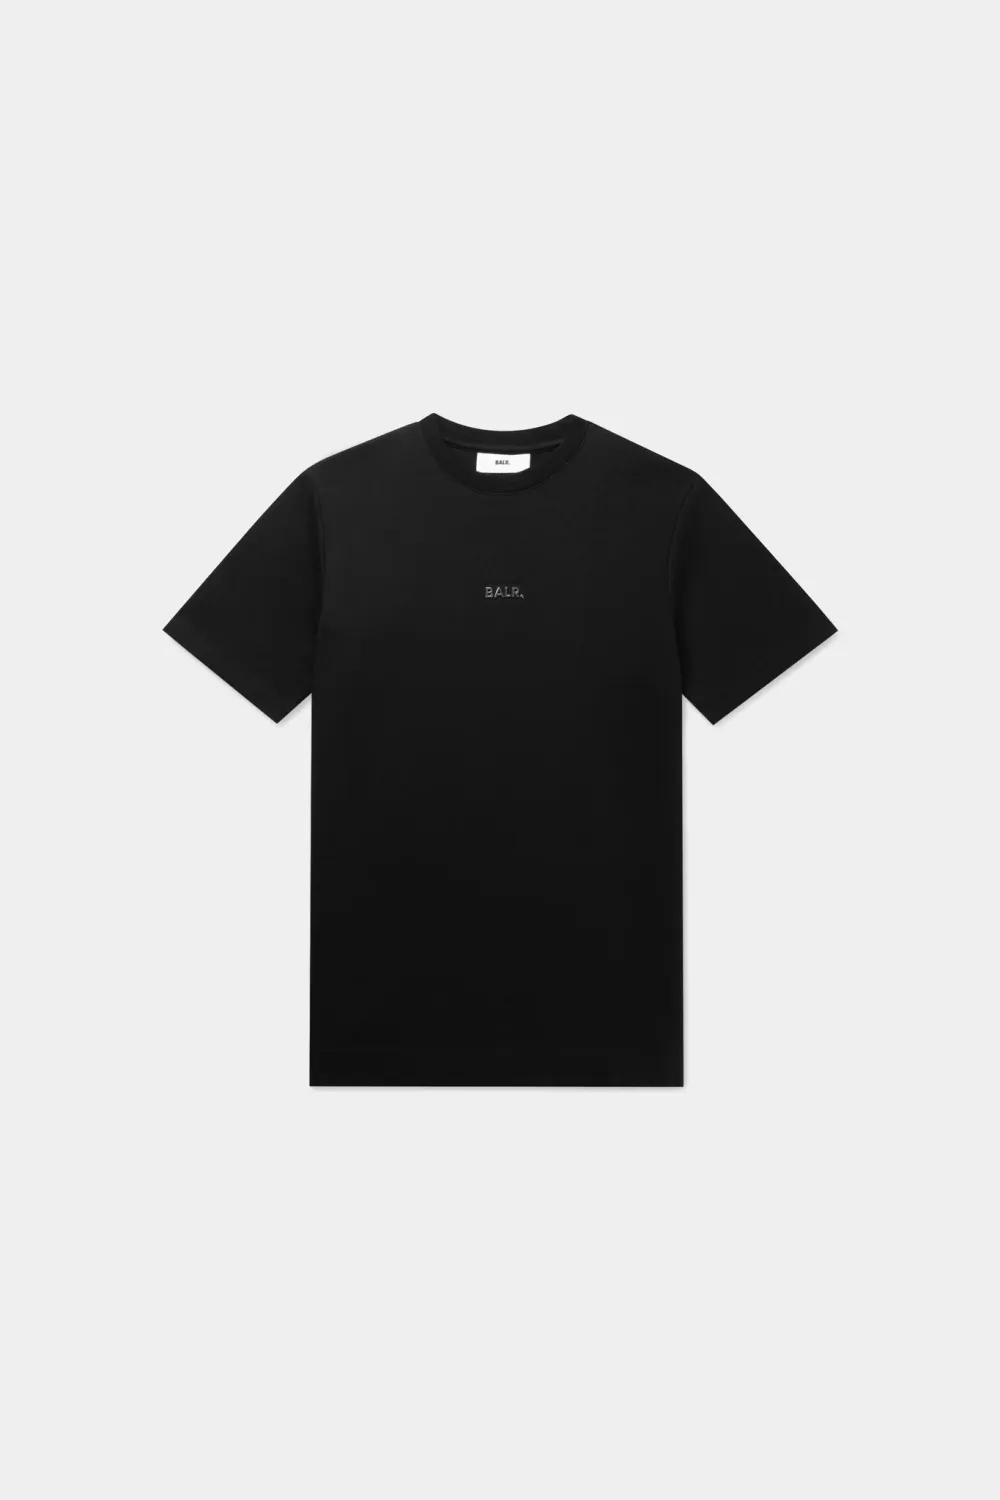 BALR. Q-Series Regular T-Shirt